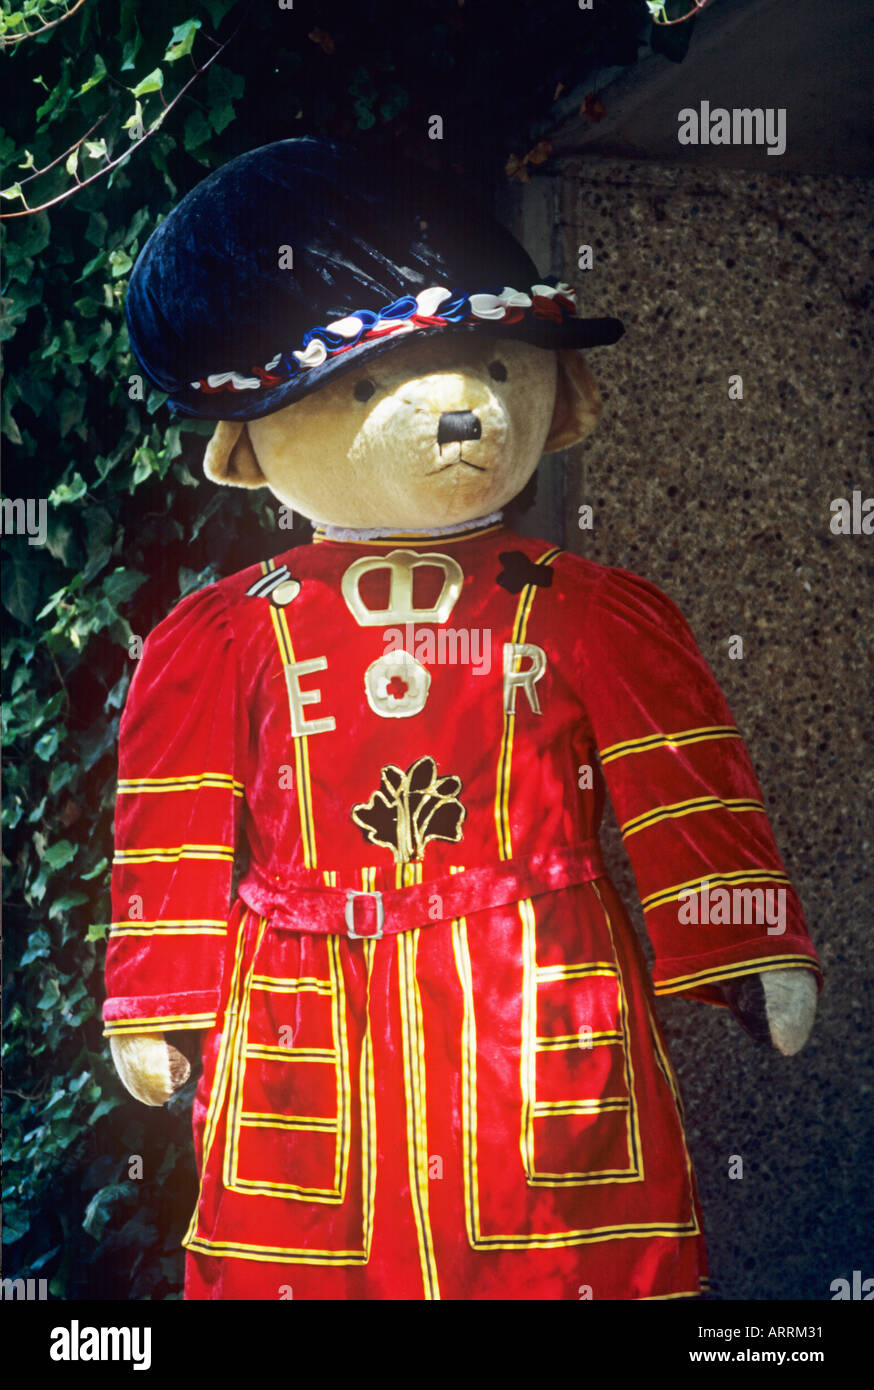 Riesen Teddybär gekleidet als Yeoman Warder außerhalb Souvenirladen am Tower of London LONDON, UK Stockfoto